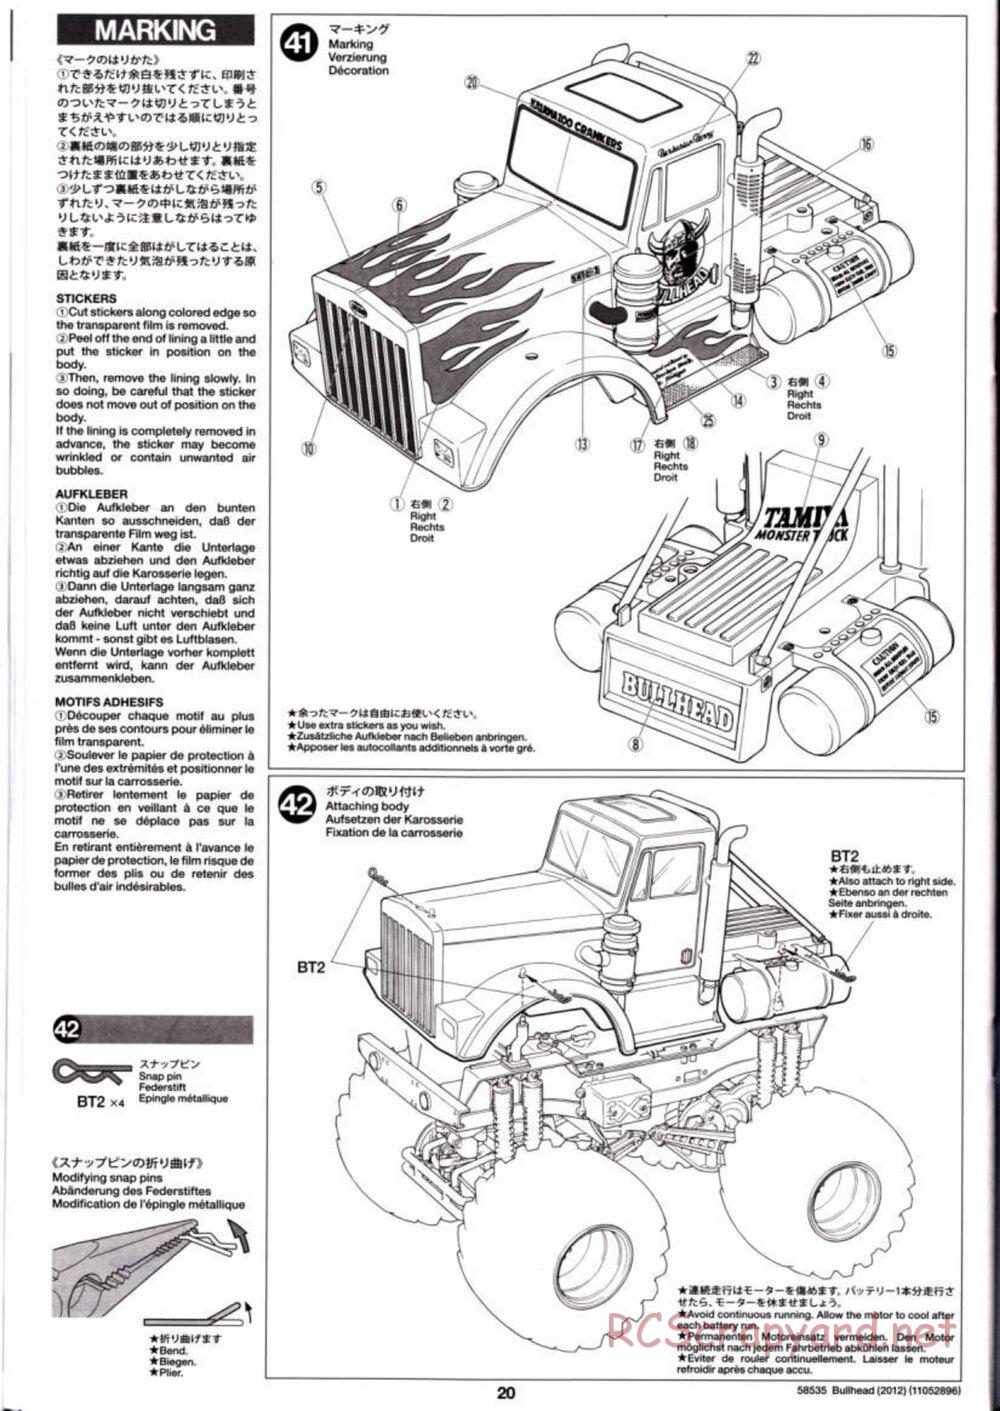 Tamiya - Bullhead 2012 - CB Chassis - Manual - Page 20